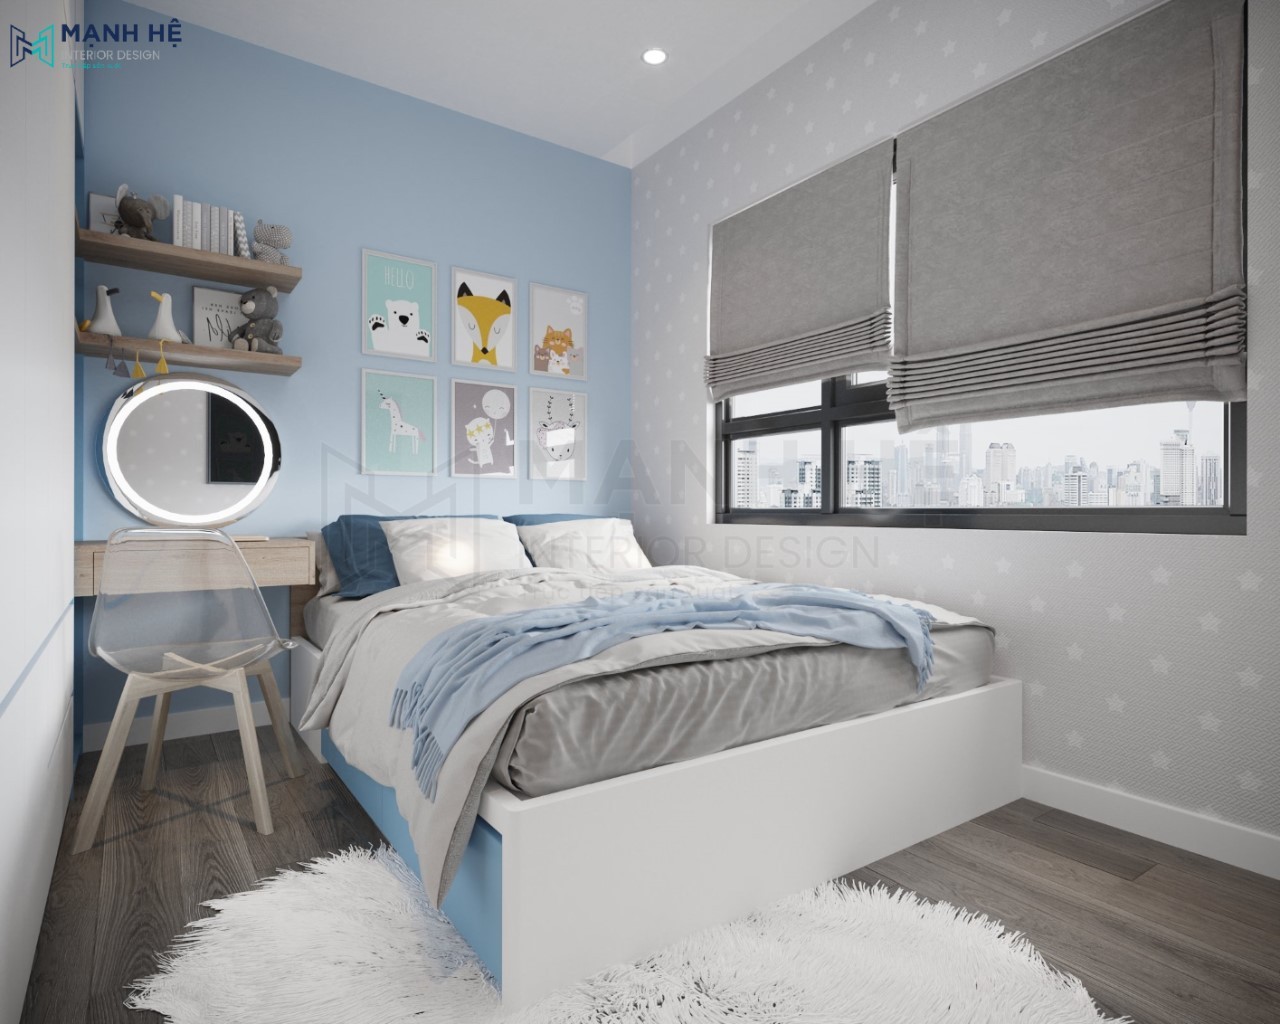 Thiết kế nội thất phòng ngủ cho bé với gam màu xanh nhã nhặn